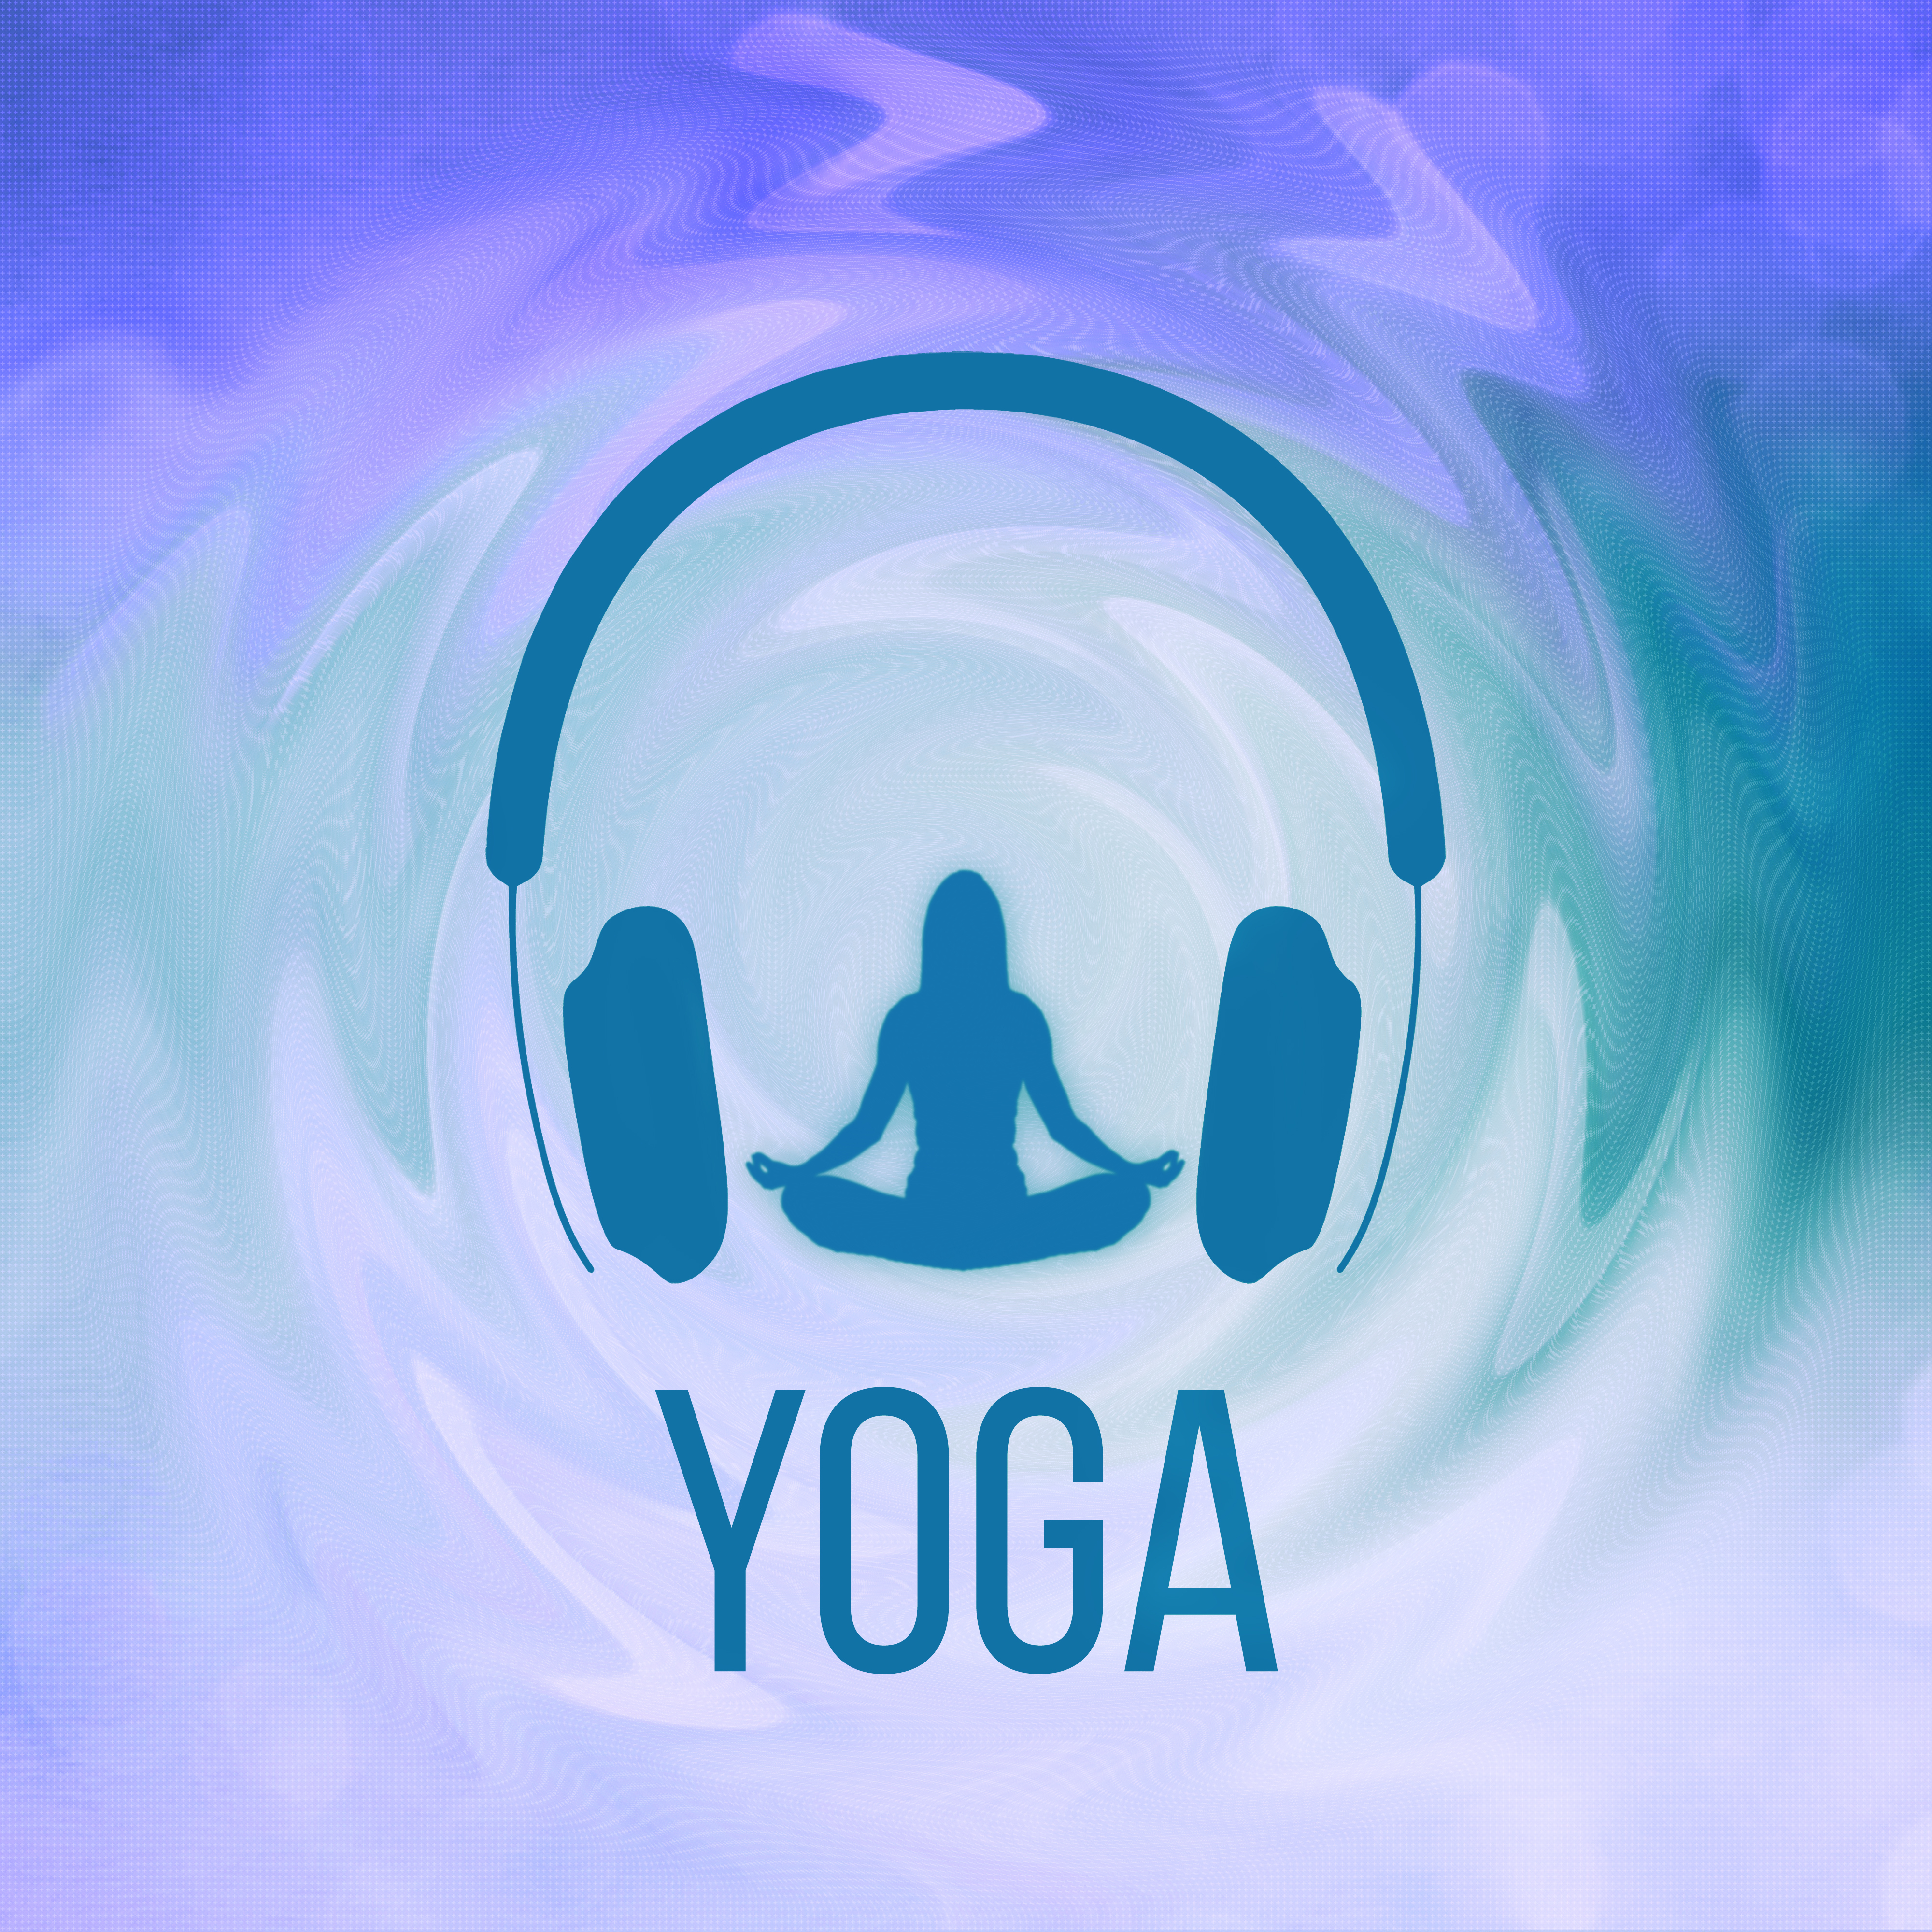 Yoga – Musica New Age de Reiki & para Meditacion, Musica de Fondo, Canciones para Relajarse y Meditar